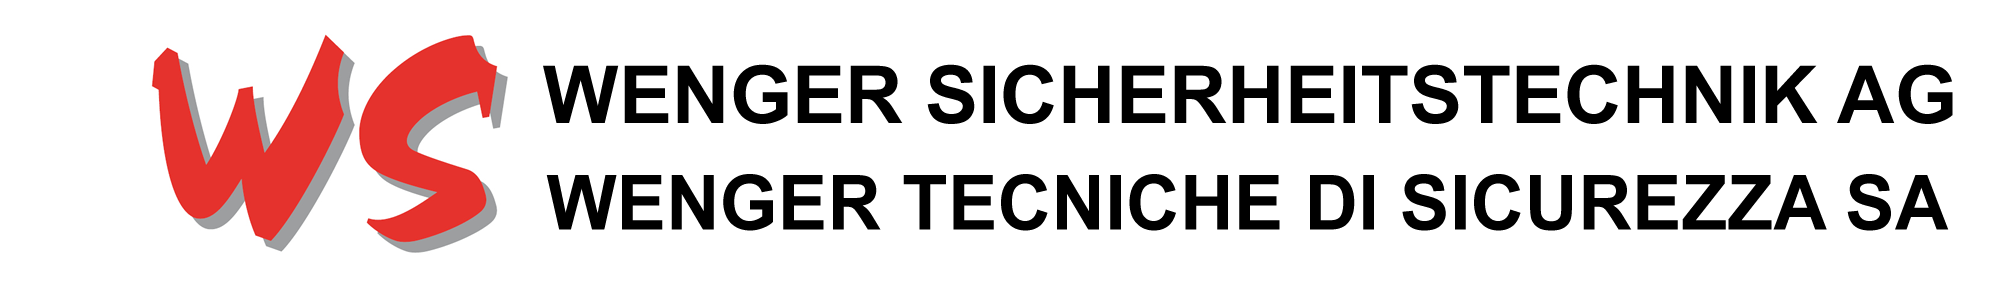 Logo Wenger Sicherheitstechnik AG  Alarmanlagen